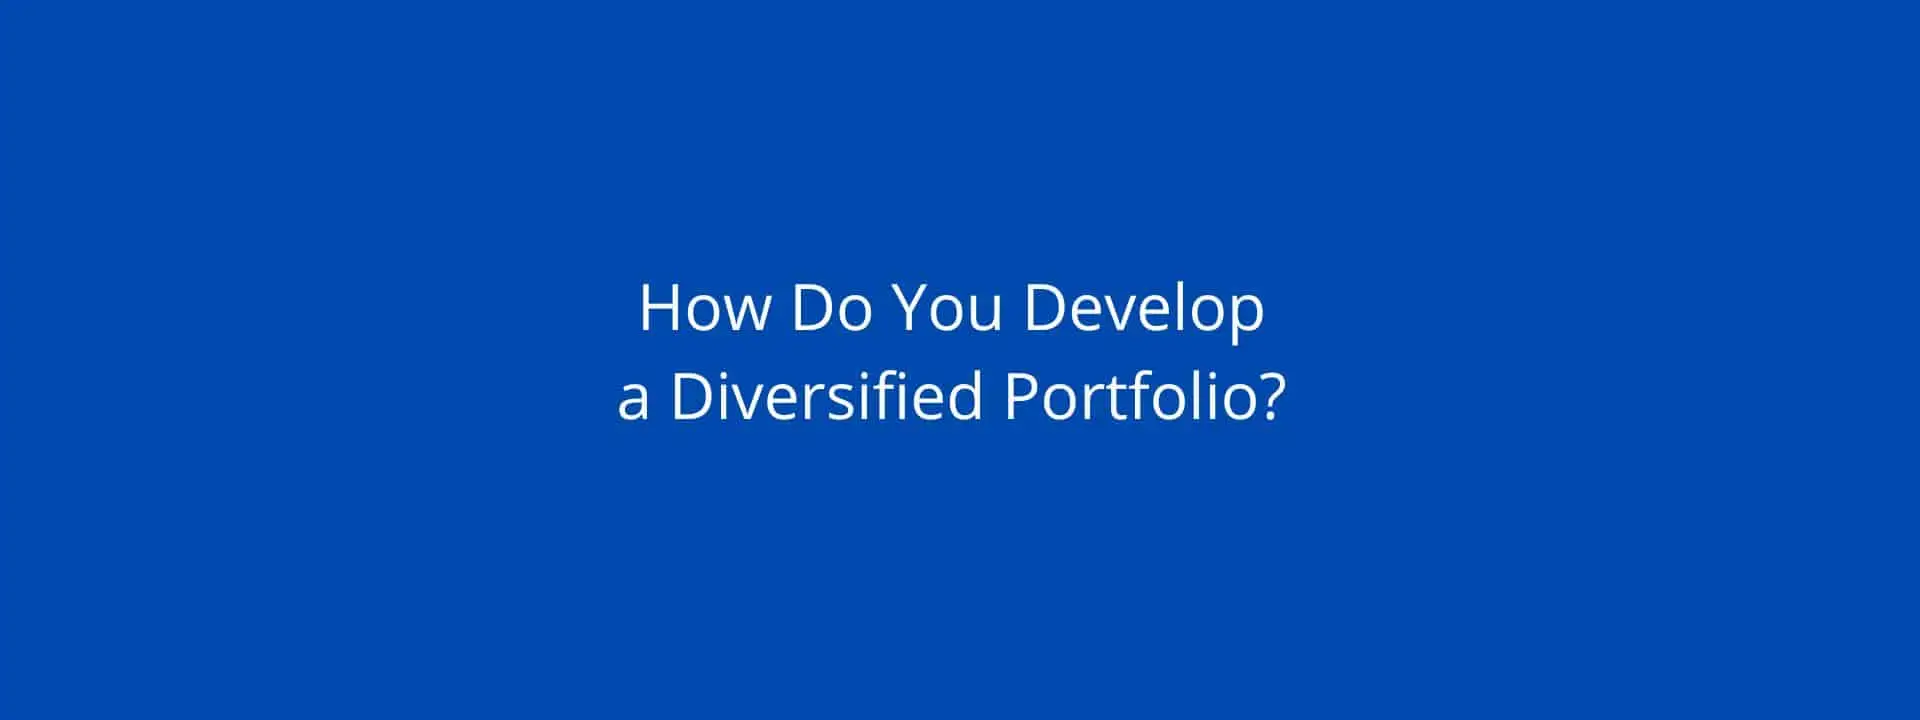 diversified portfolio discussed